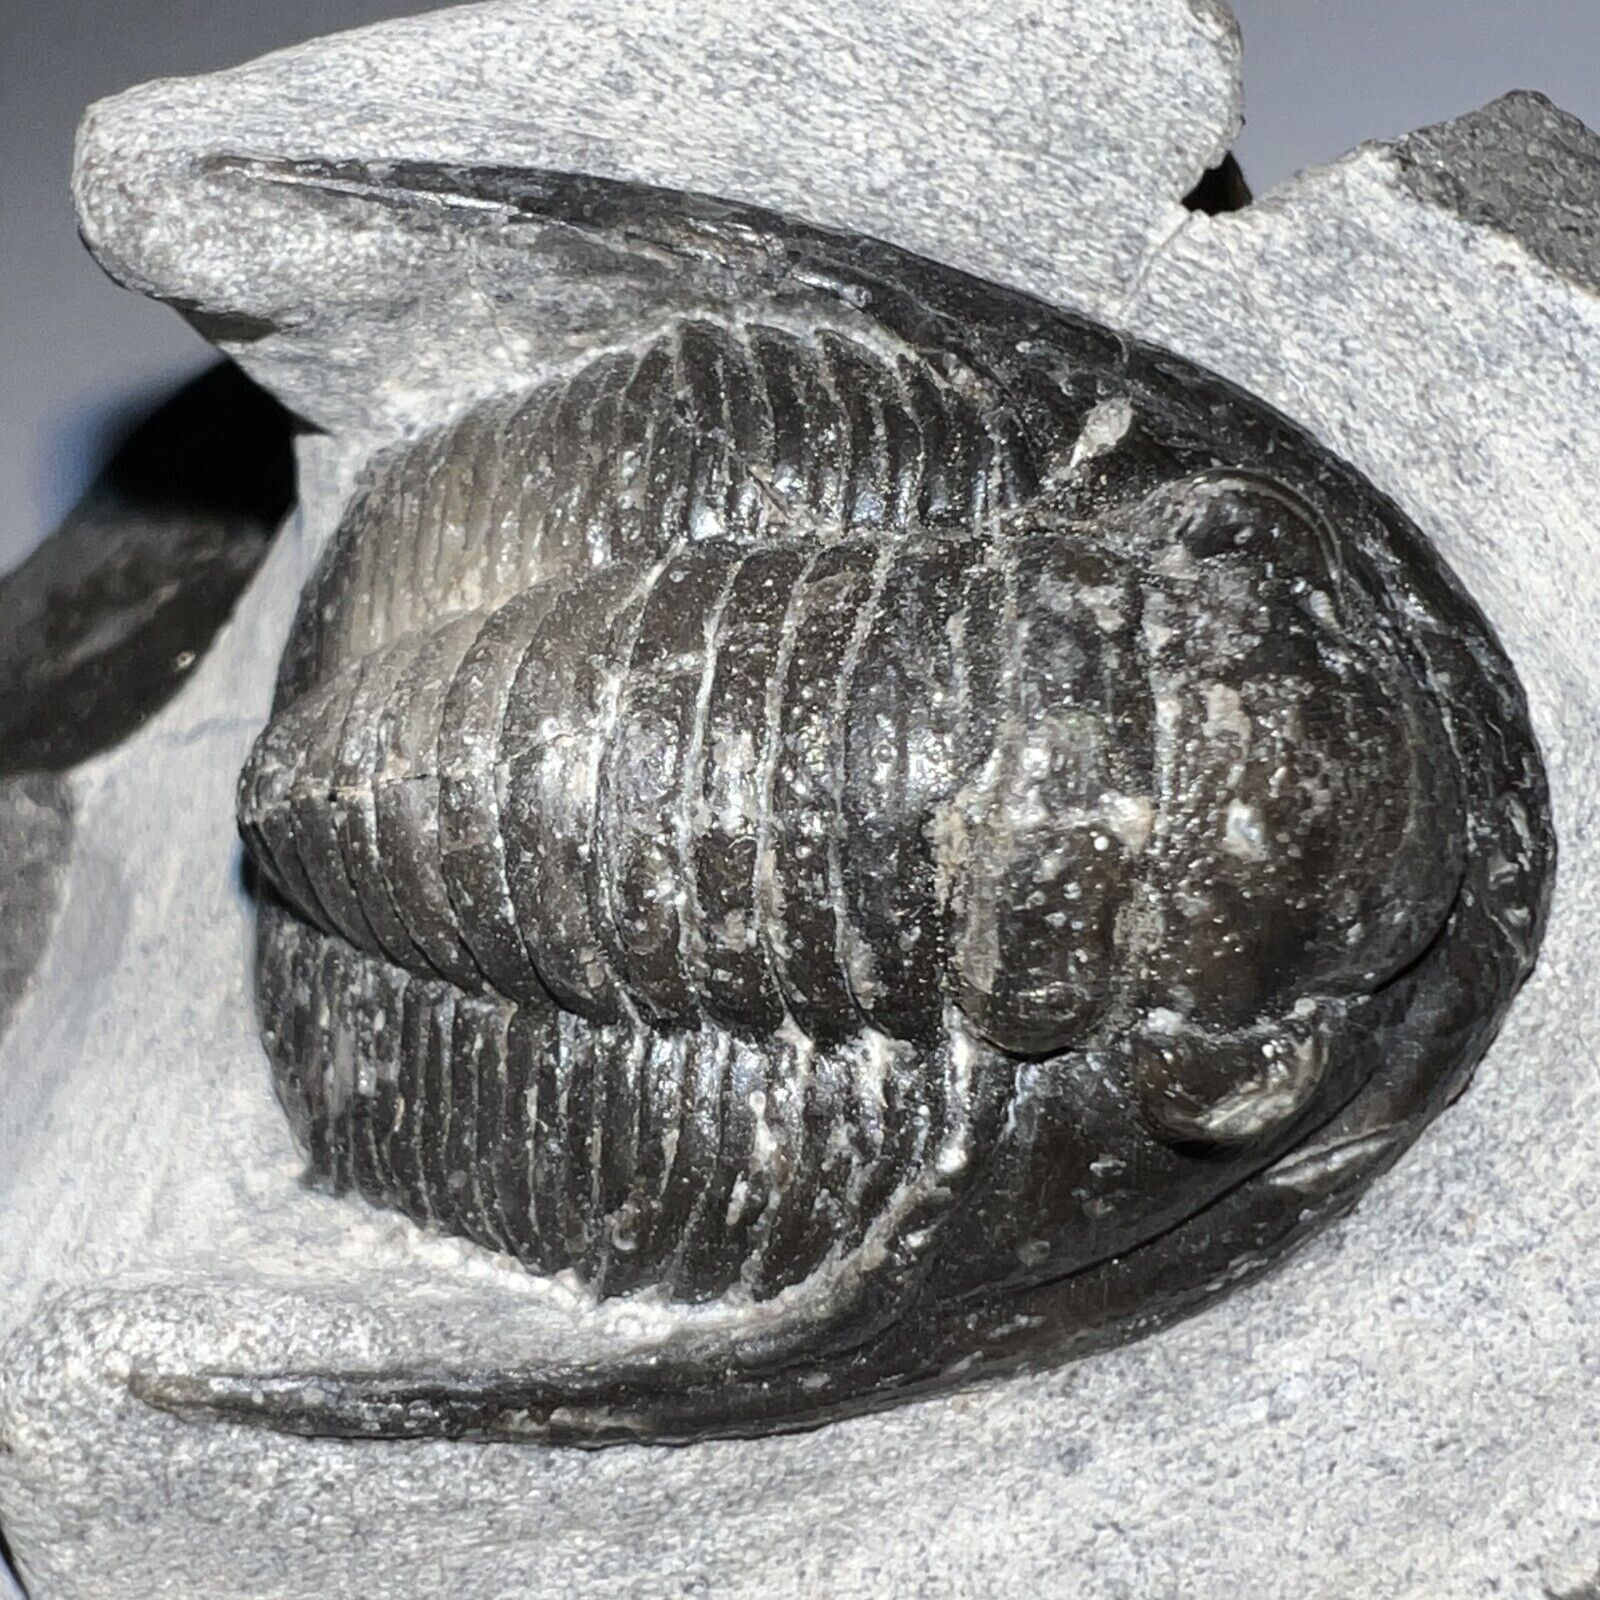 Rare Moroccan Pre Dinosaur Fossil TRILOBITE CORNUPROETUS 1.5 INCHES